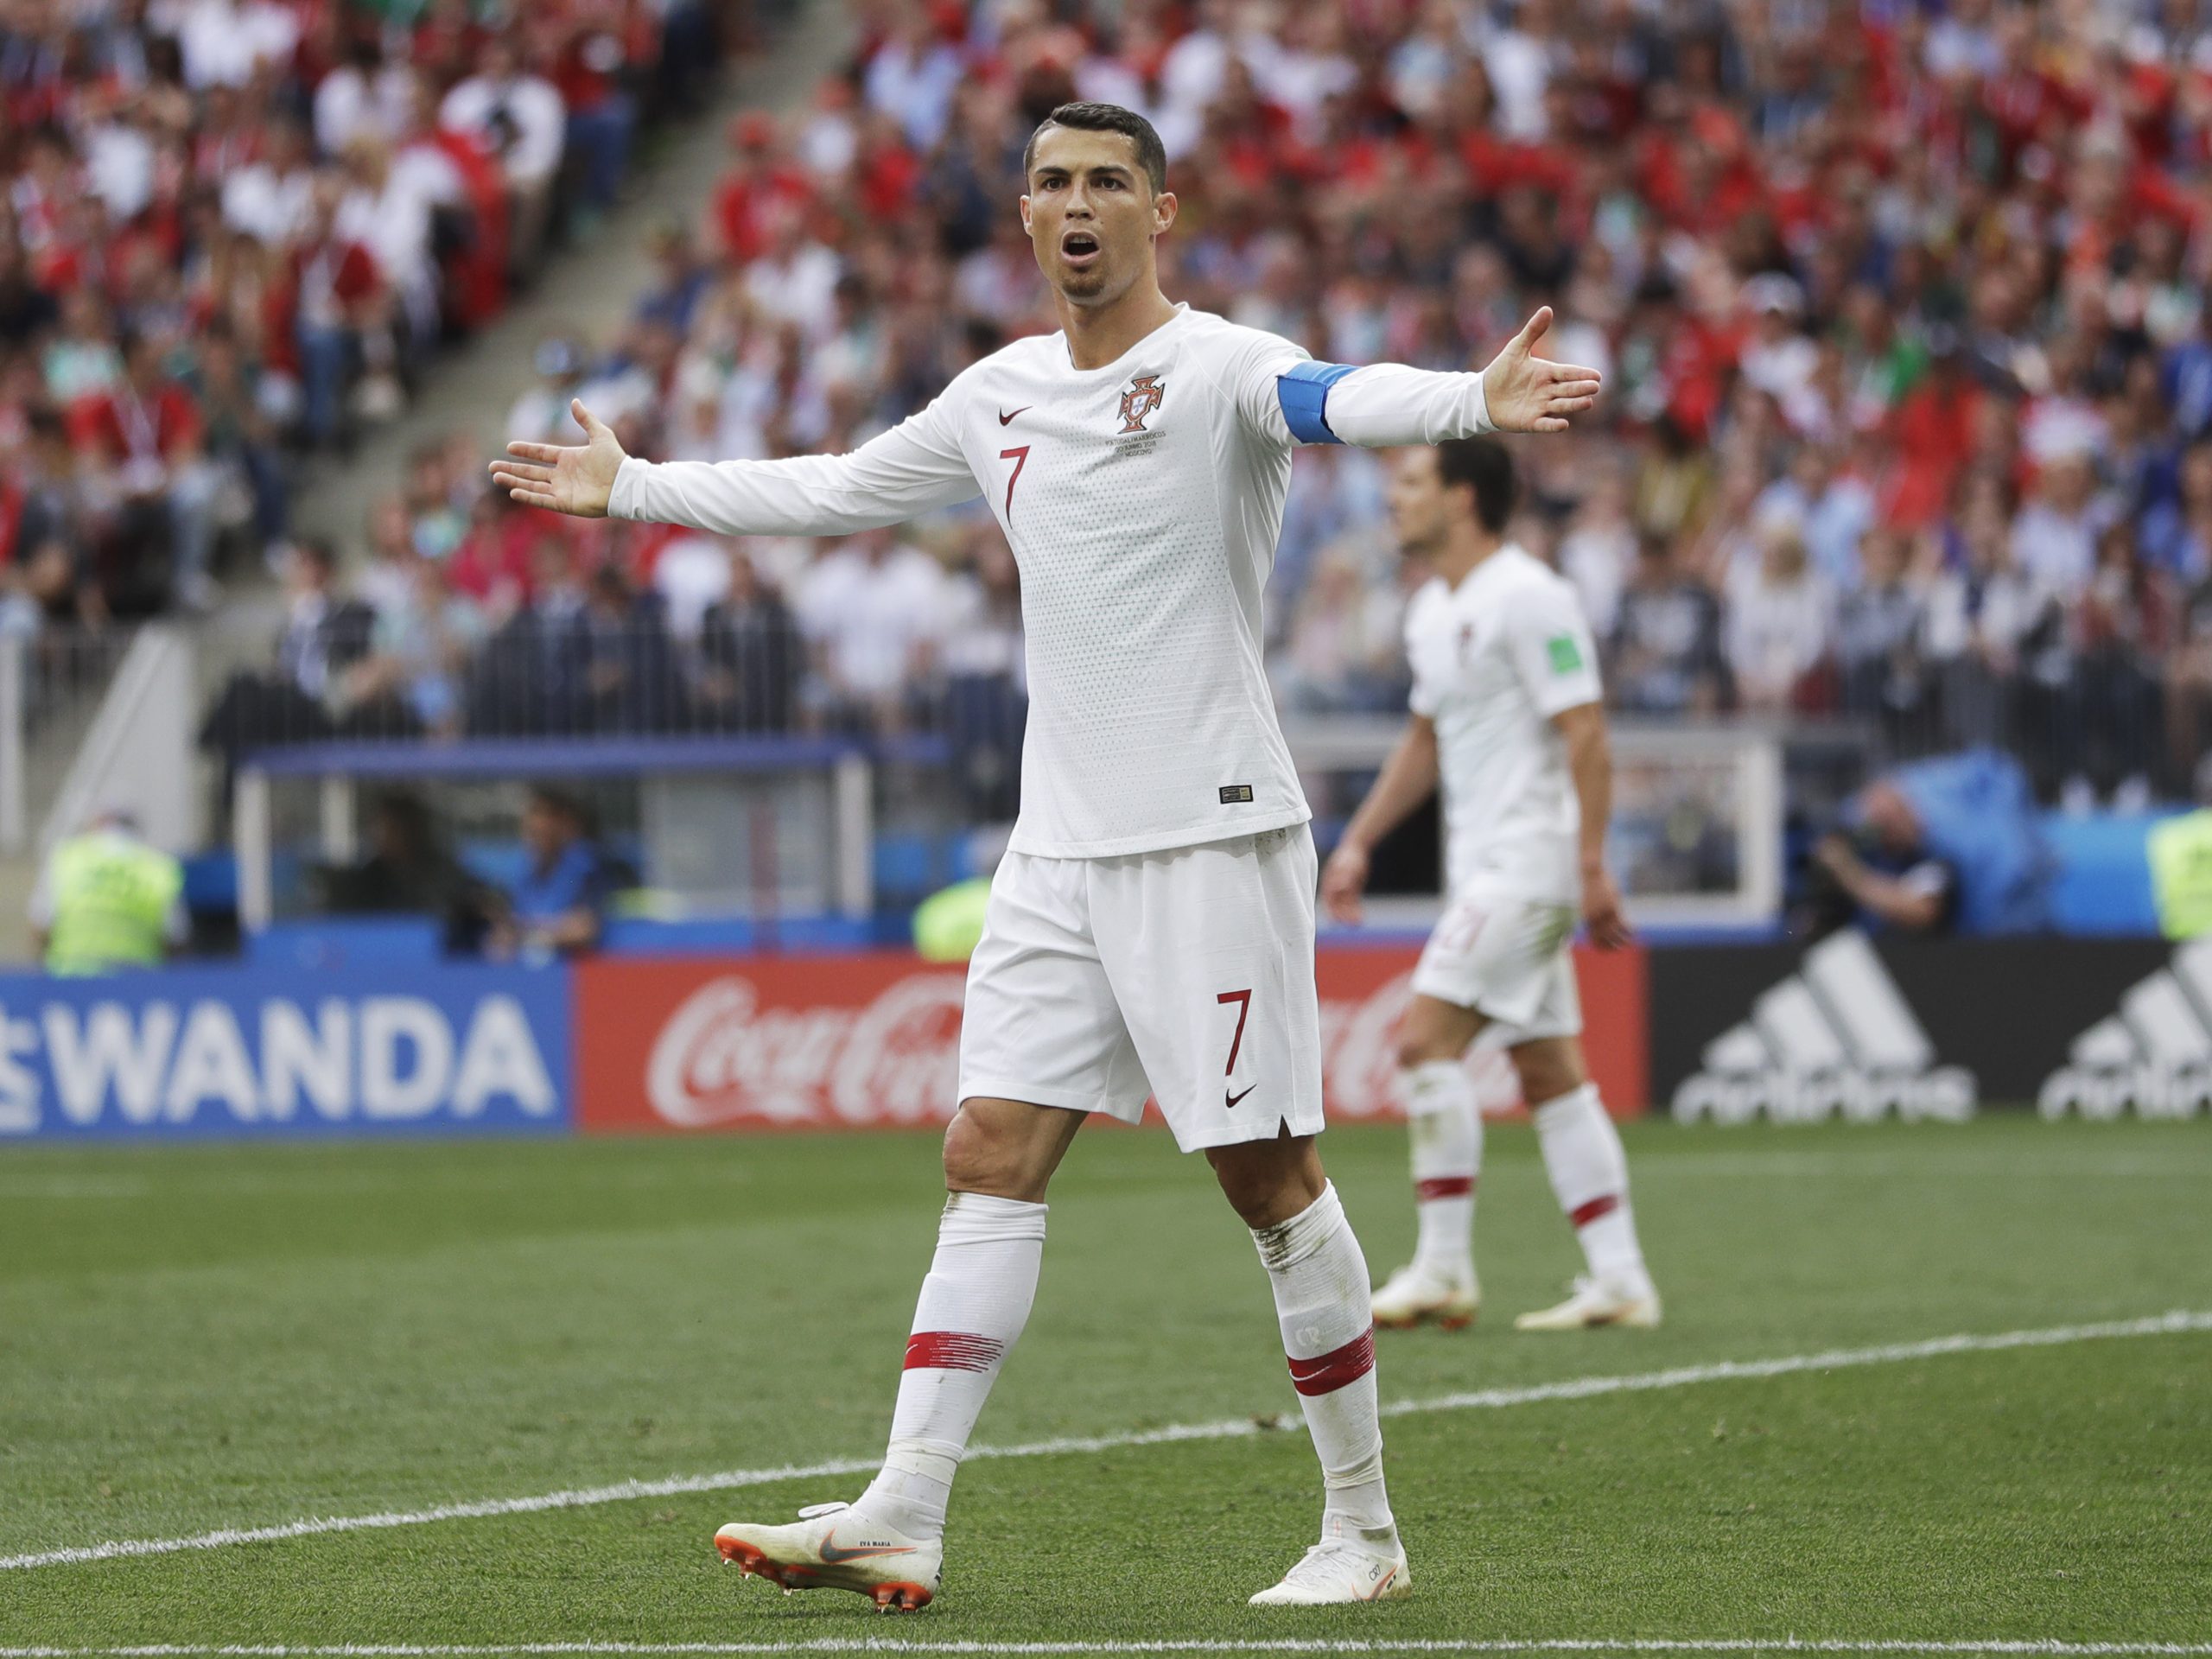 Kỹ thuật đá bóng của Ronaldo: Tận dụng sức mạnh và tốc độ để lấn sân đối thủ - BÓNG ĐÁ ONLINE